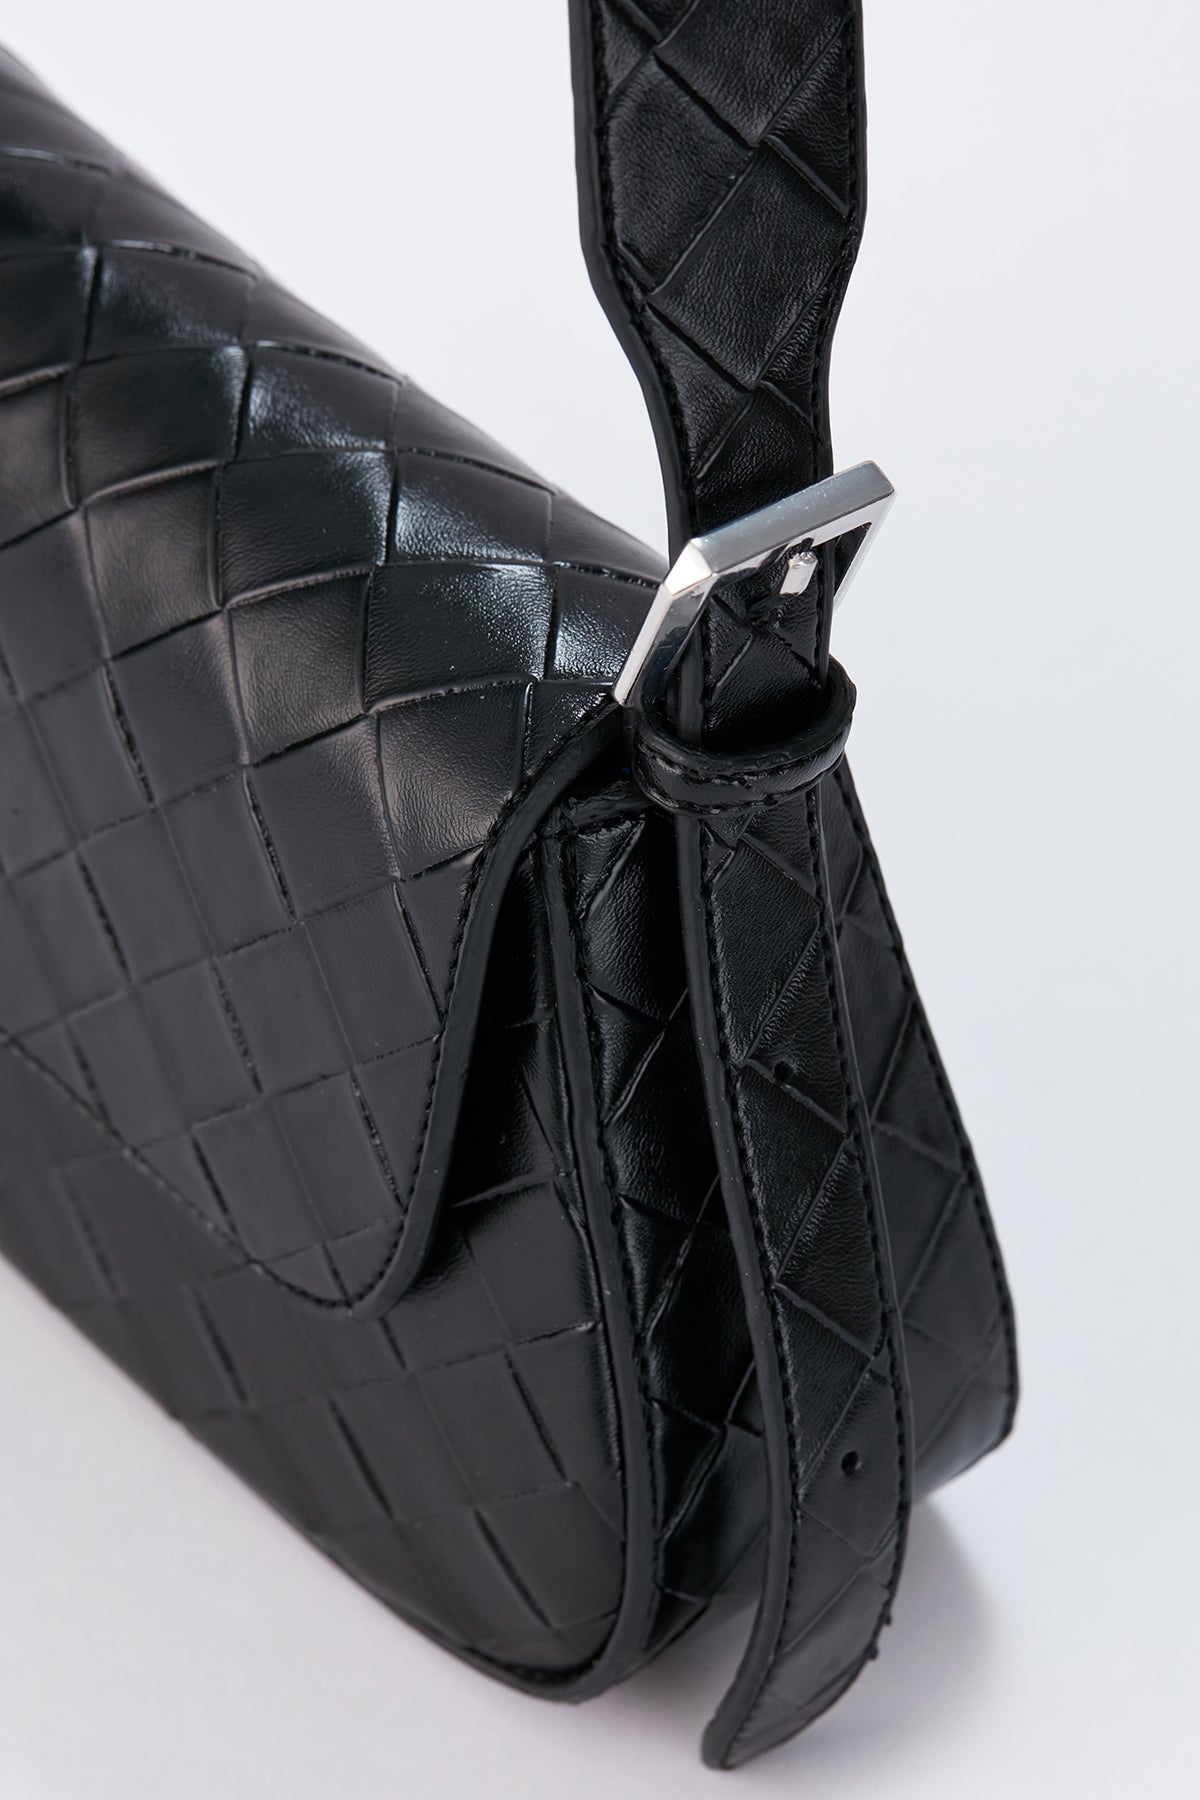 Baguette Shoulder Bag - Black